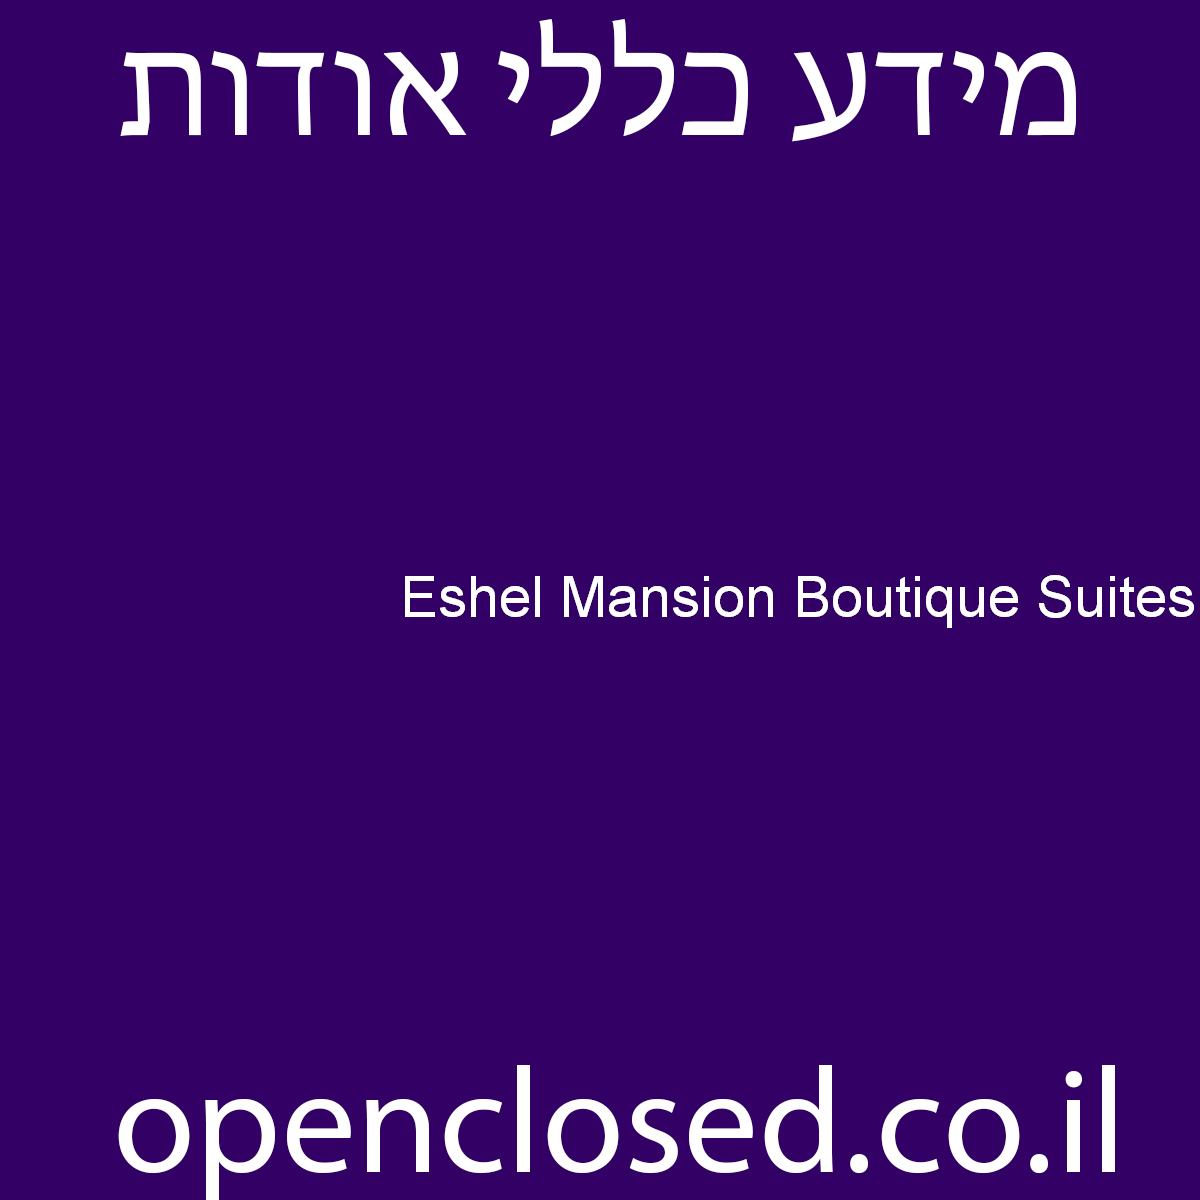 Eshel Mansion Boutique Suites